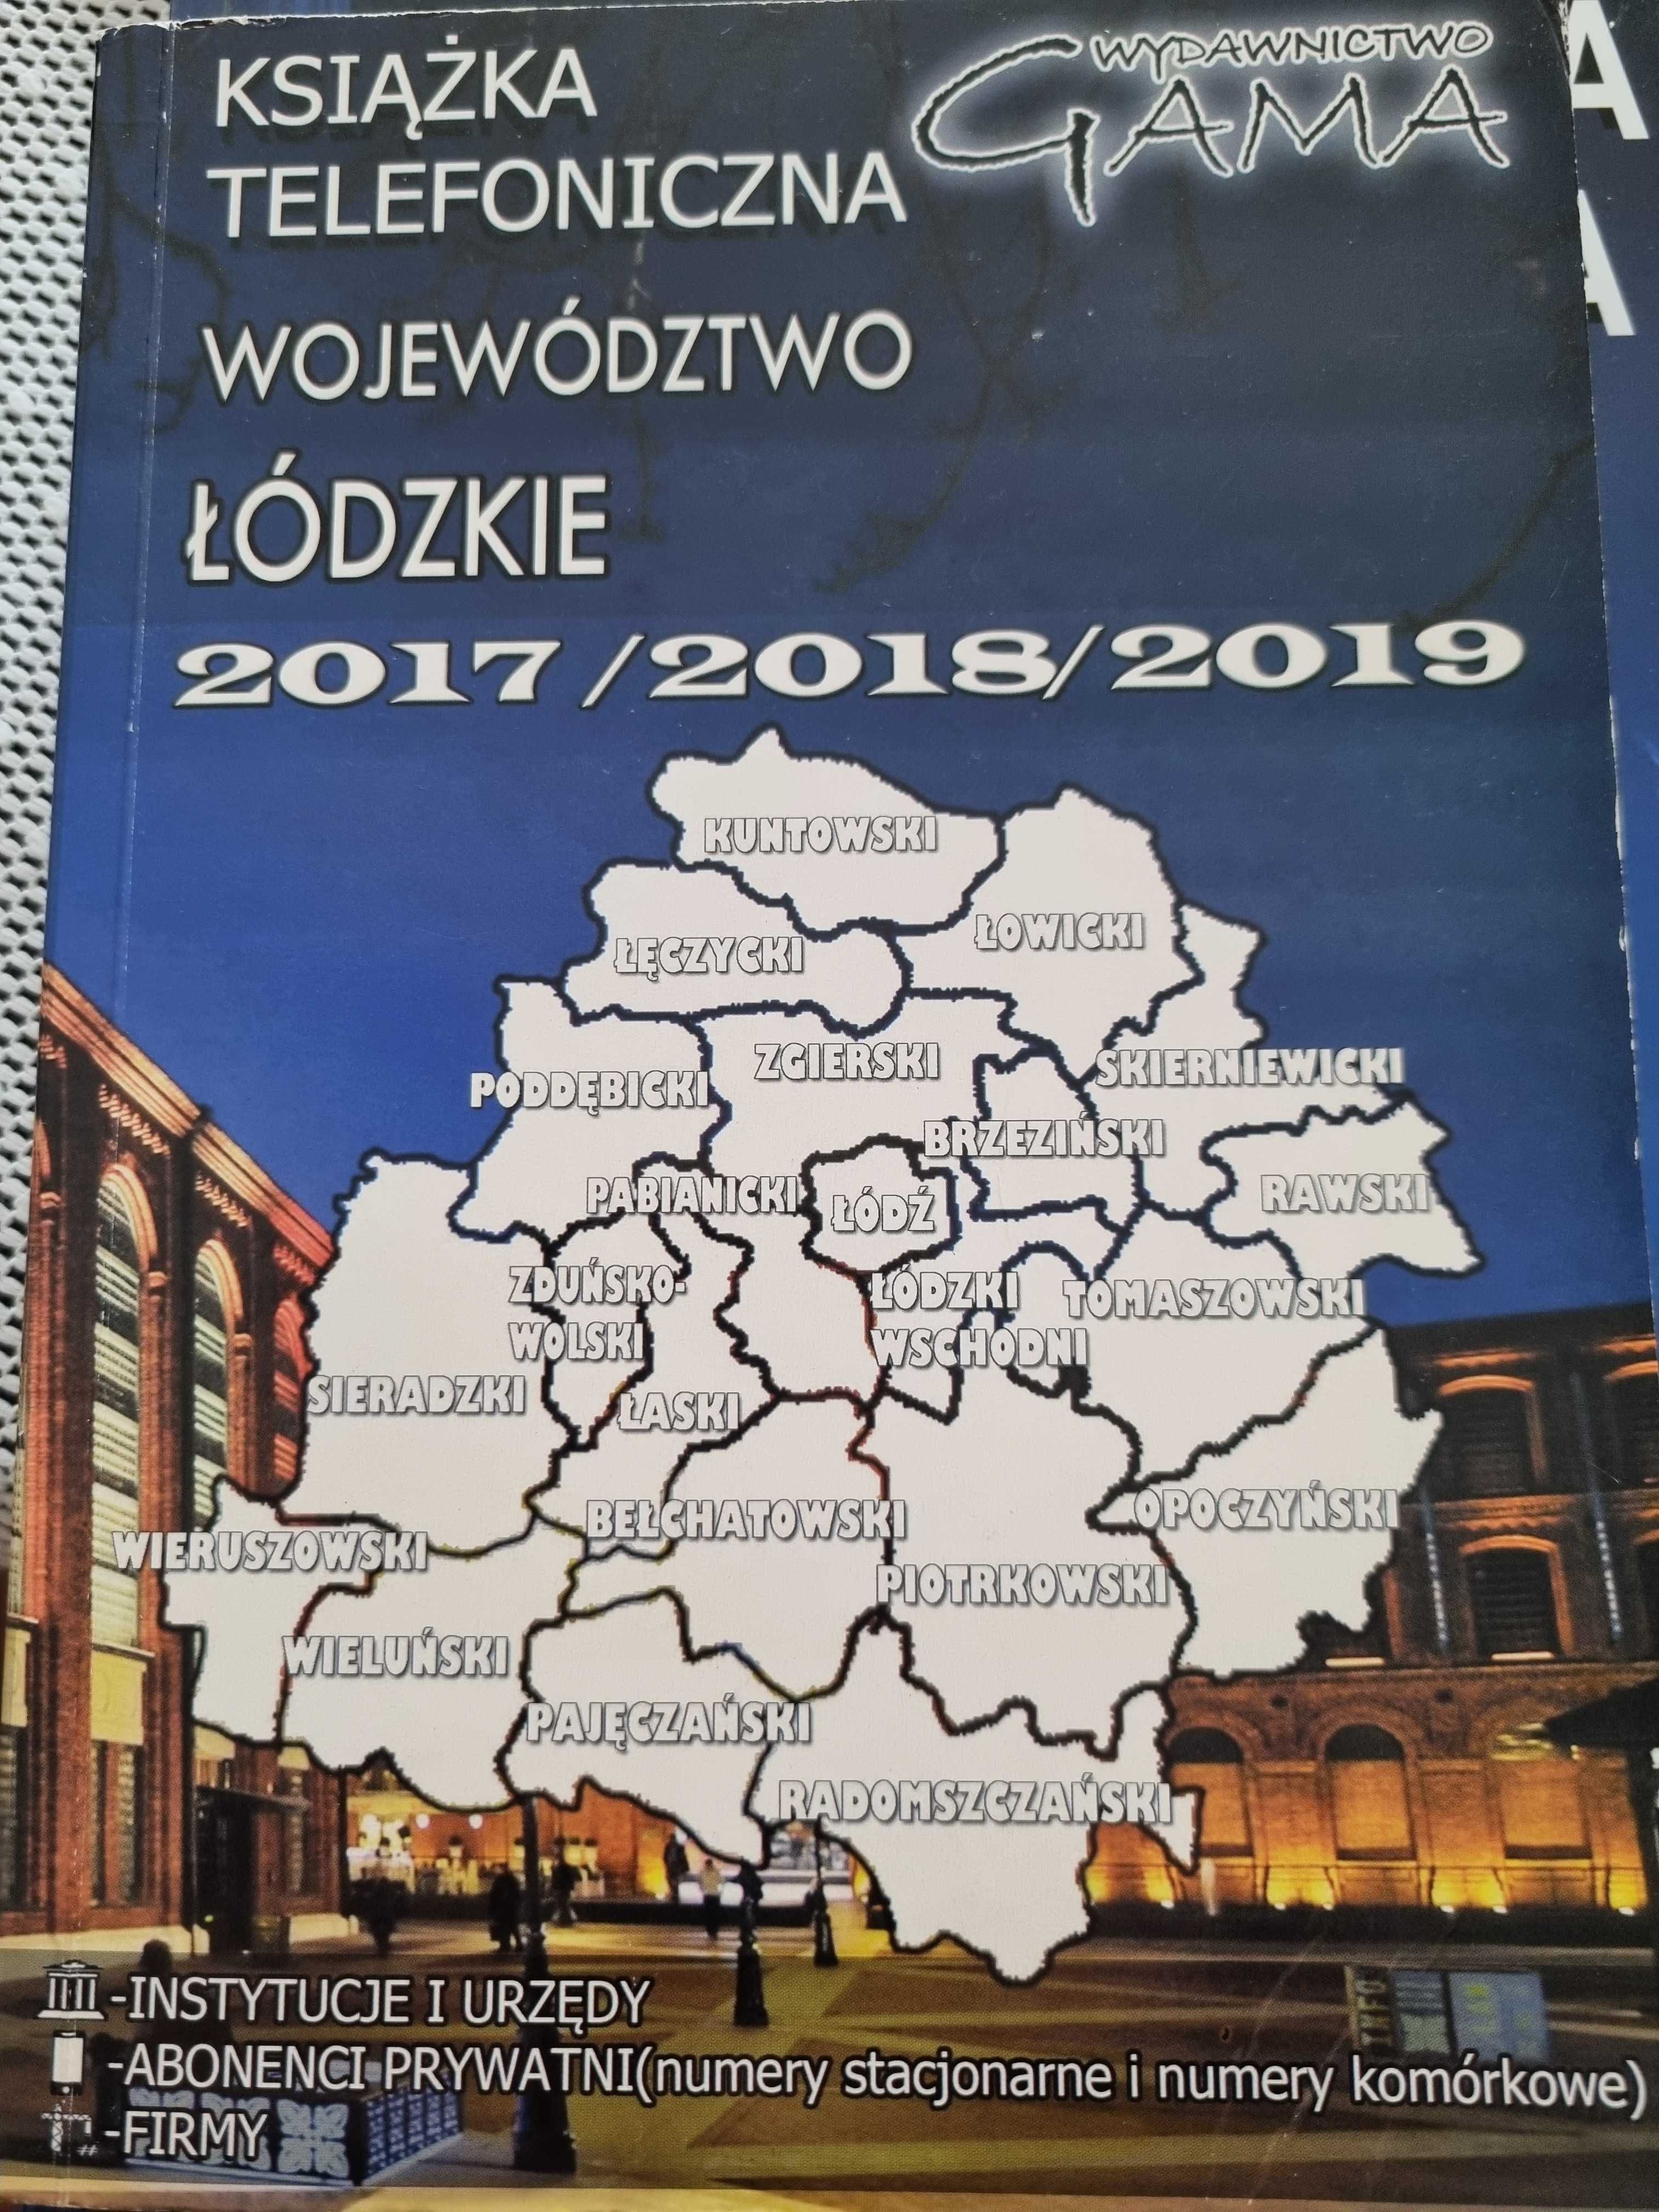 Książka telefoniczna woj łódzkiego 2017-19